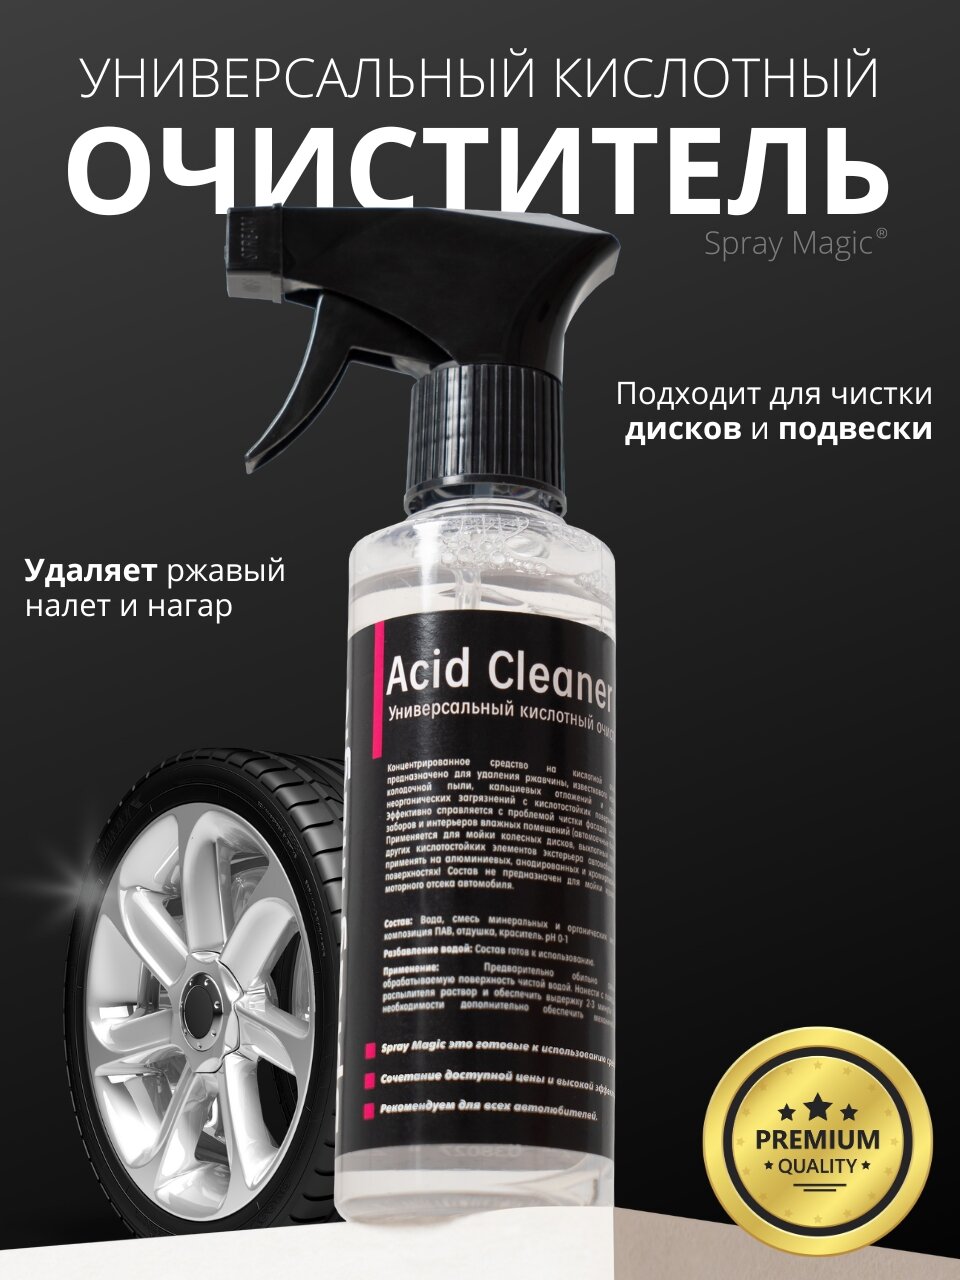 Spray Magic AcidCleaner - универсальный кислотный очиститель 250мл